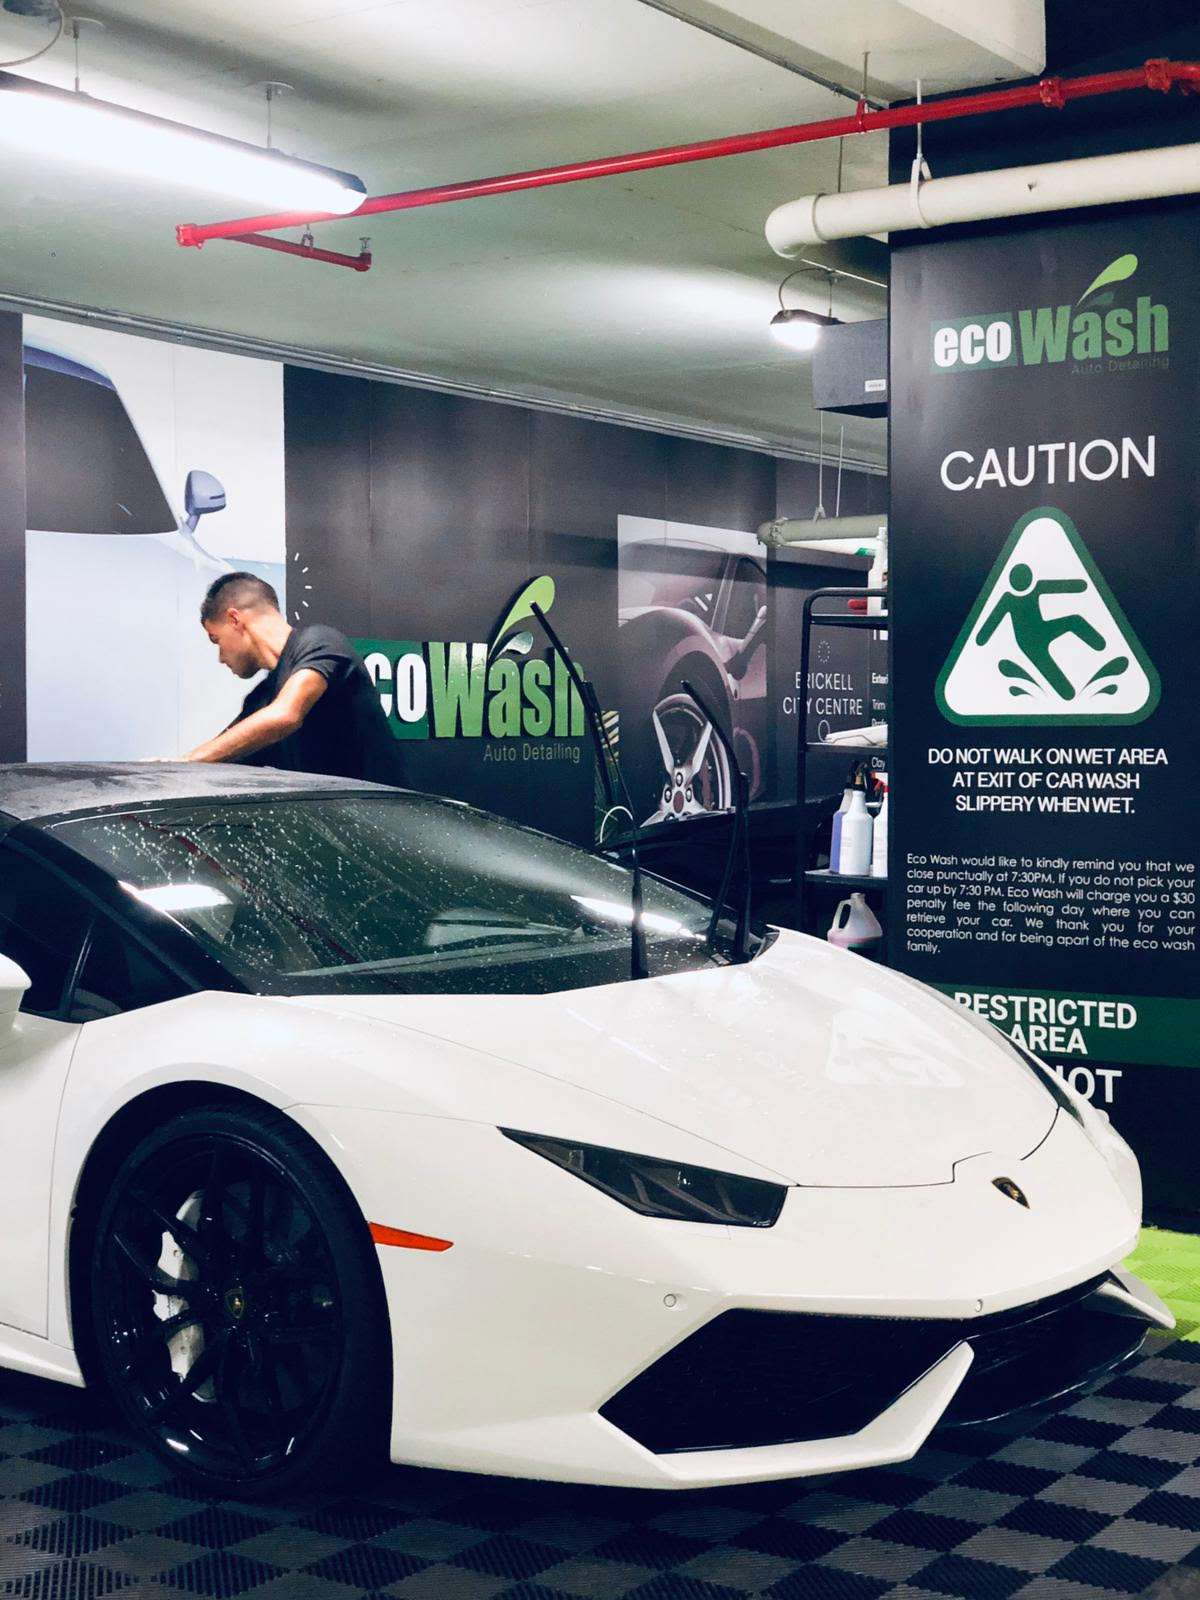 Car wash ecológicos: Un negocio que se expande en Miami y lo lidera una Chica